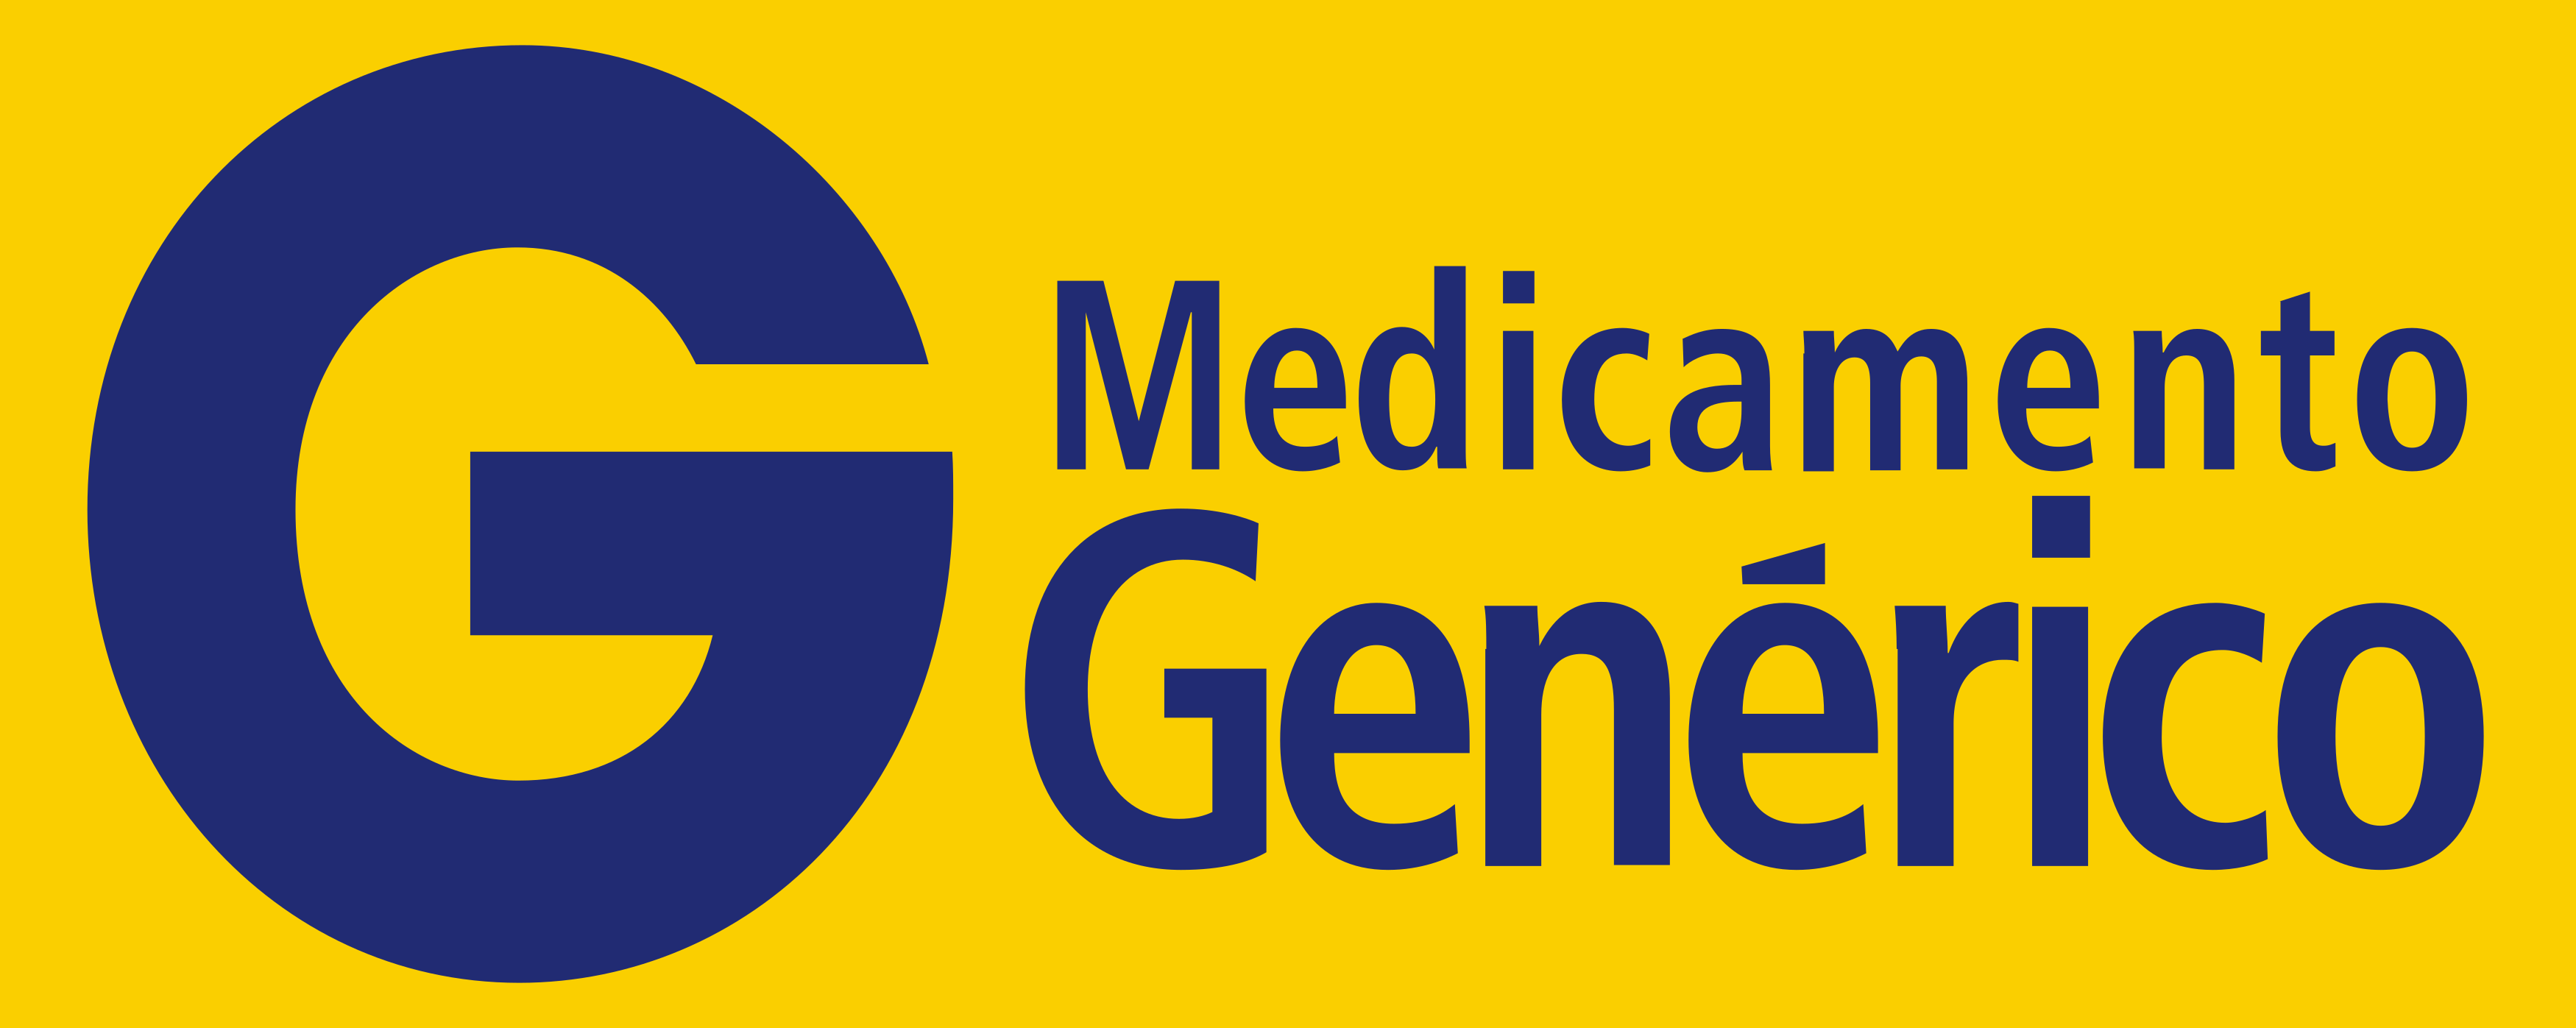 Medicamento Genérico Logo.